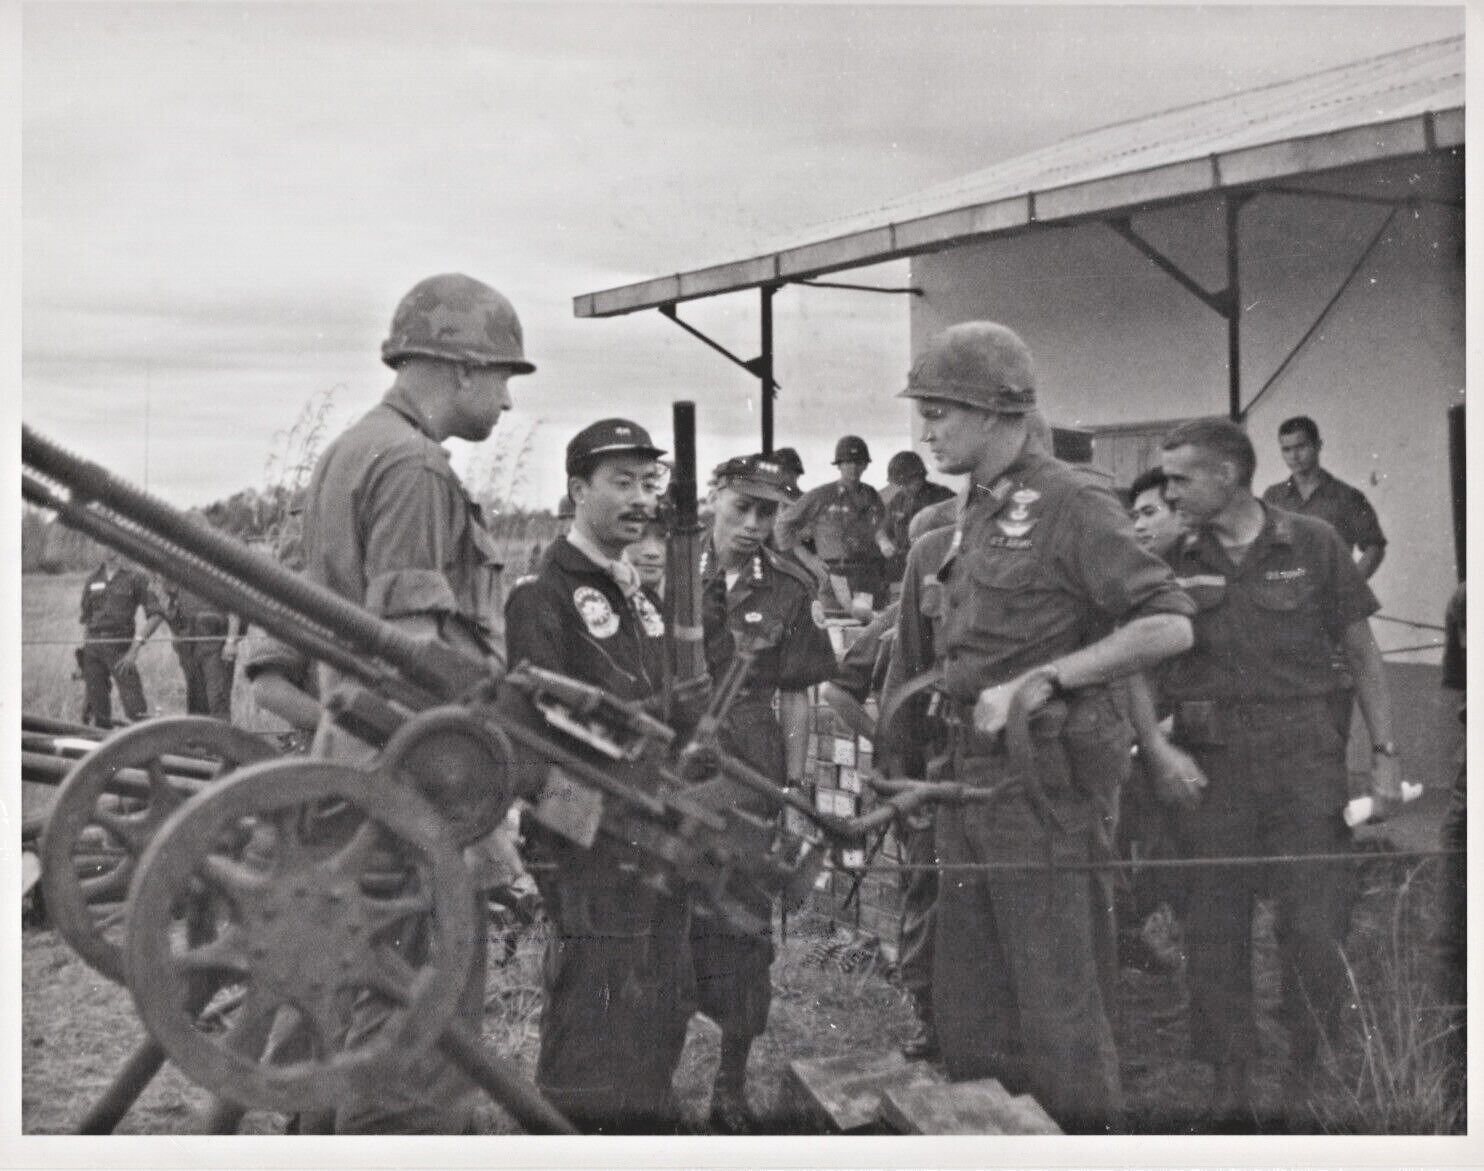 1965 Vietnam- Prime Minister views weapons seized Viet Cong - Vintage Print 8x10